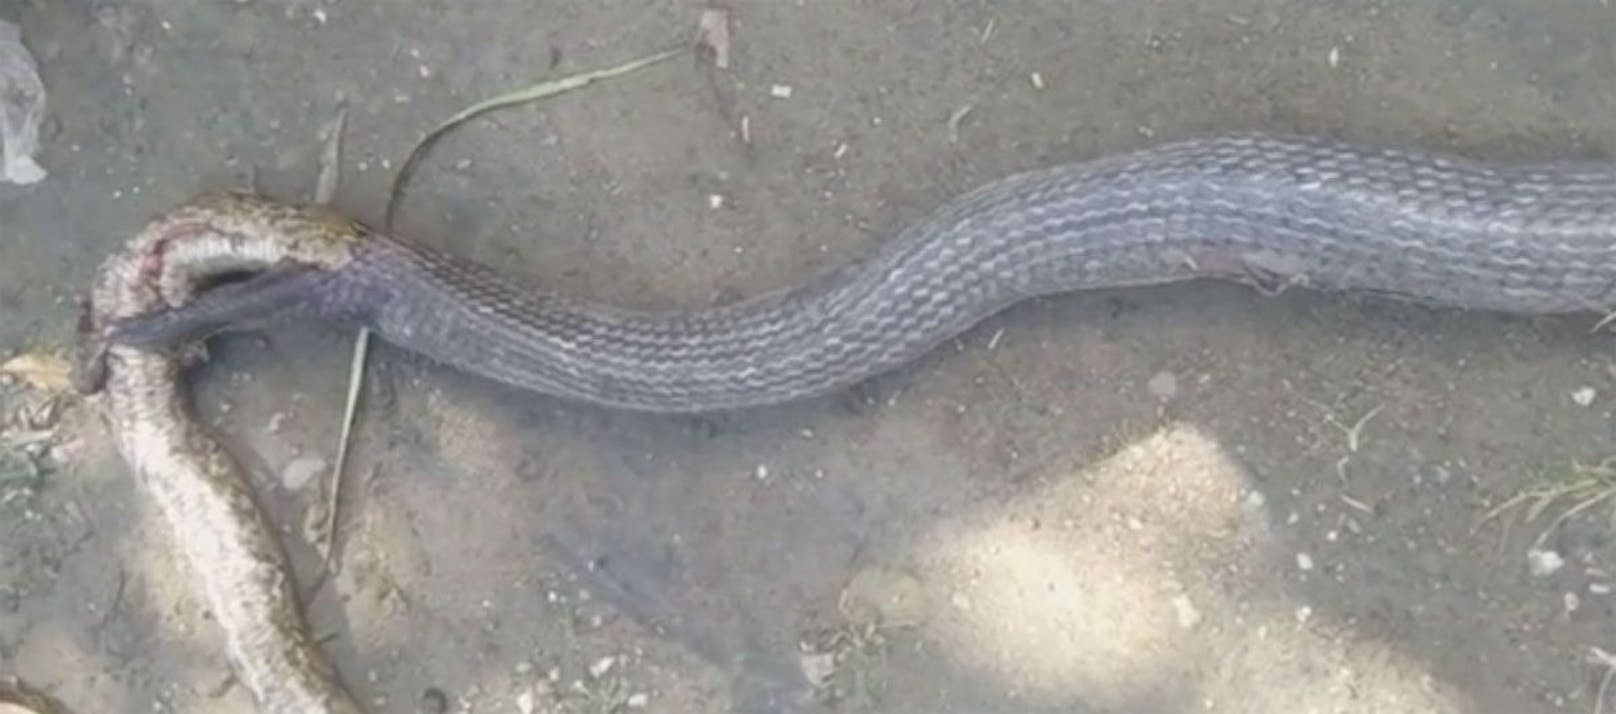 Auf den Philippinen&nbsp;entdeckten Einheimische&nbsp;zwei riesige Schlangen auf einem Reisfeld im Süden des Landes: Die Cobra war gerade dabei, die Python zu fressen. In Panik geraten töteten sie das giftige Raubtier, noch bevor es den Schwanz seines Opfers vollständig verschlungen hatte.